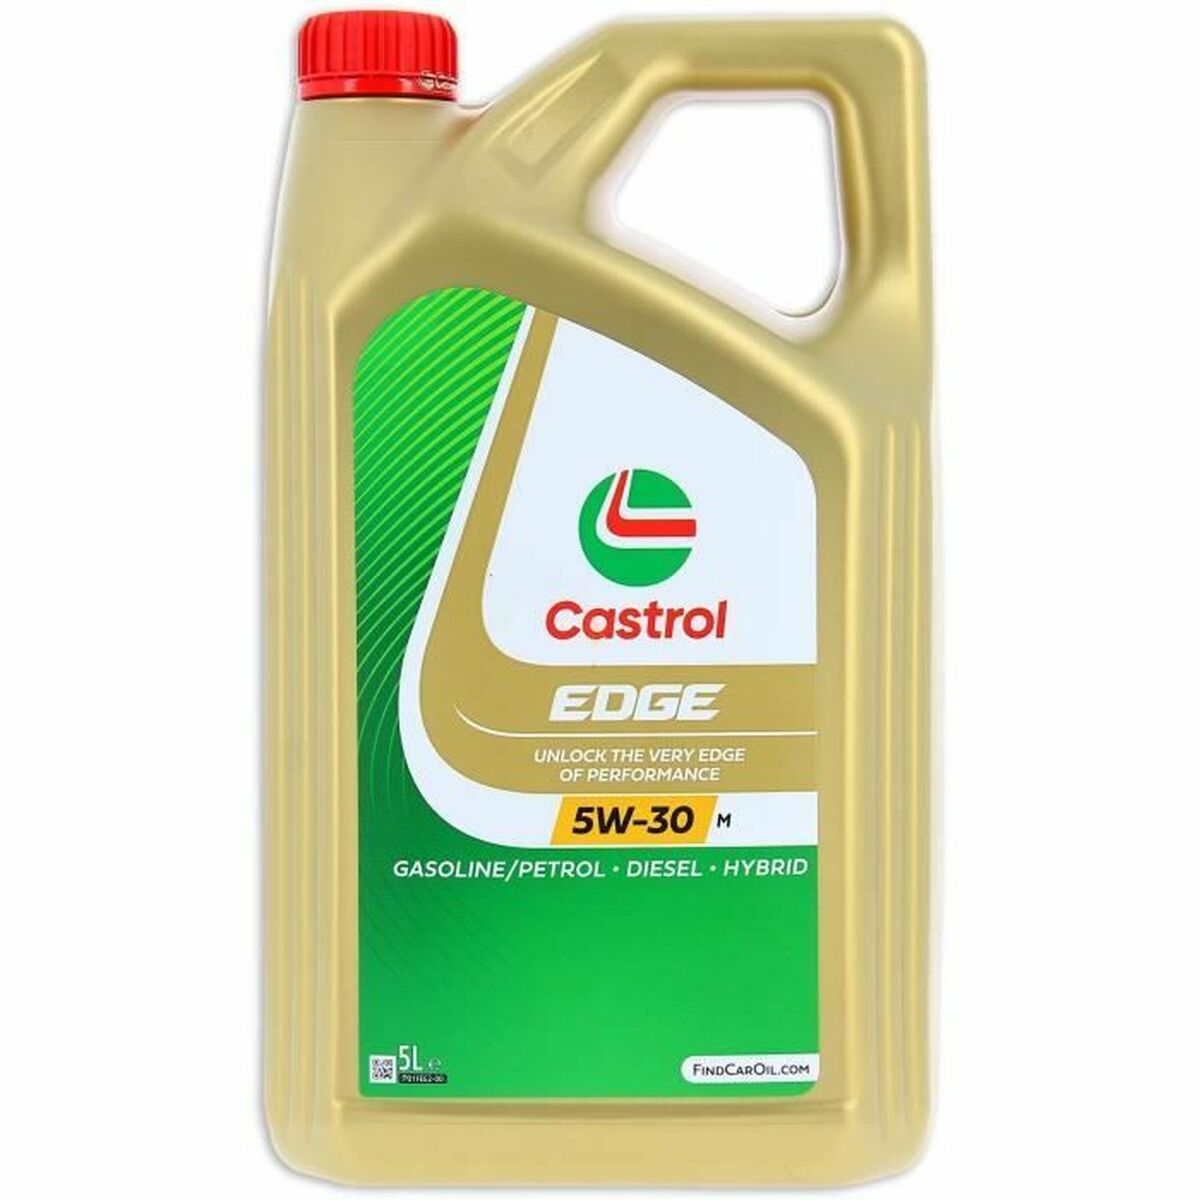 Aceite Castrol GTX 5W30 C4 5 L 38,50 € 